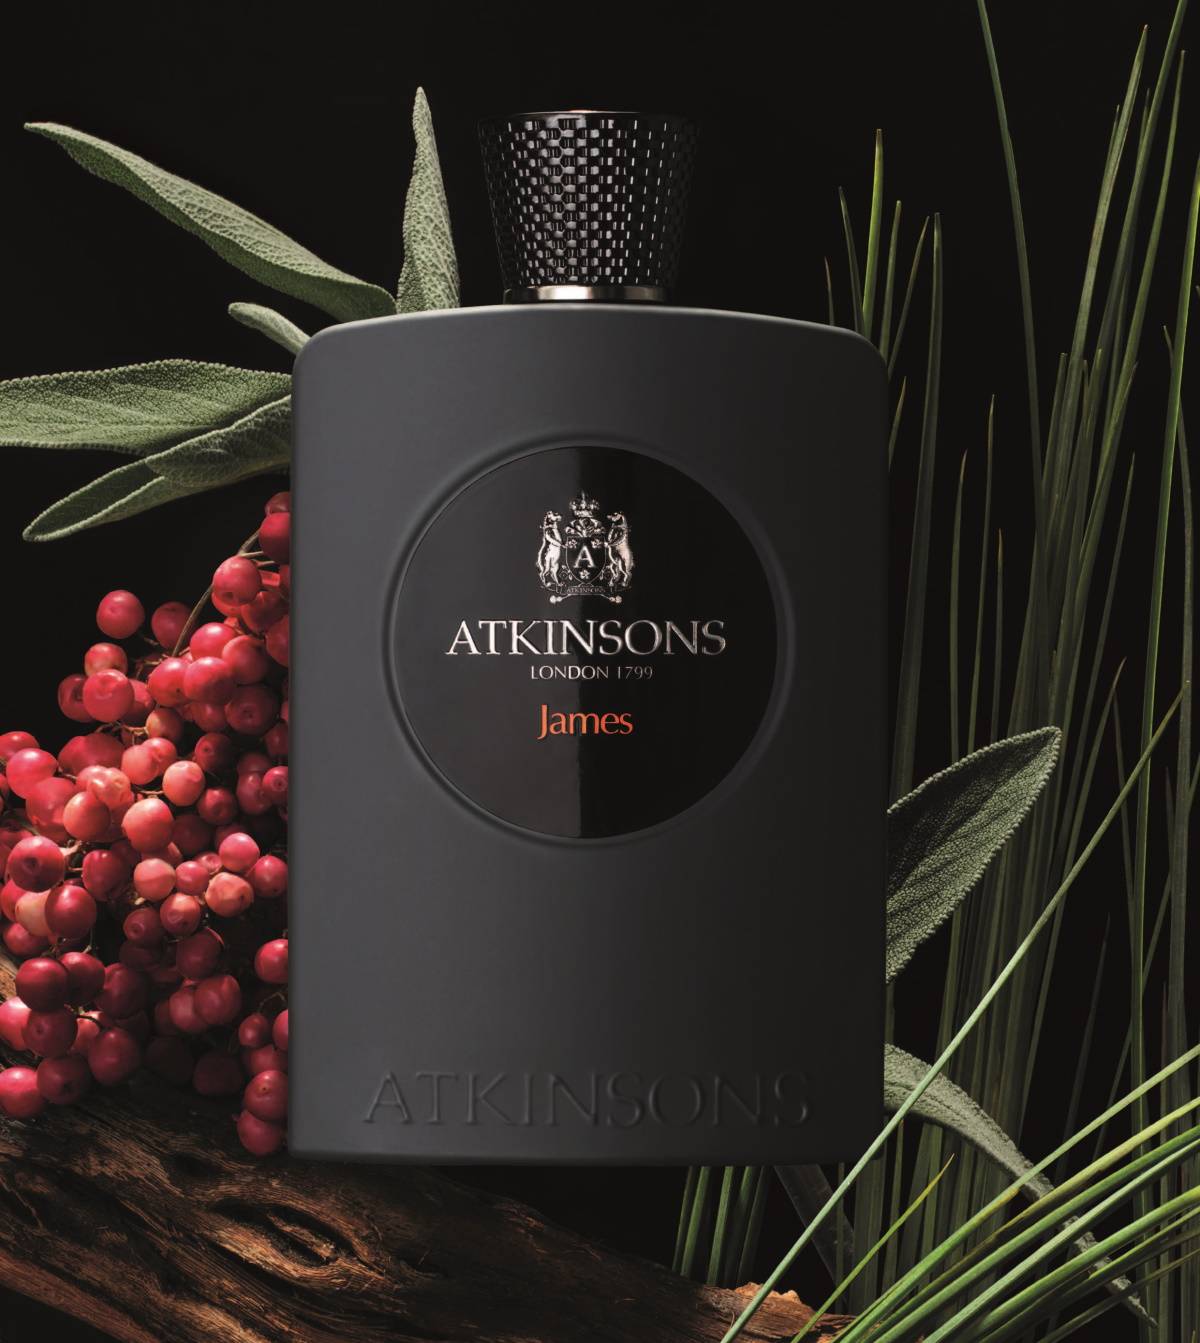 Atkinsons: Perfumy z królewskiego dworu. Z okazji premiery nowego zapachu w rodzinie Atkinsons – James – przybliżamy historię perfumeryjnej marki, którą pokochali królowie i carowie.